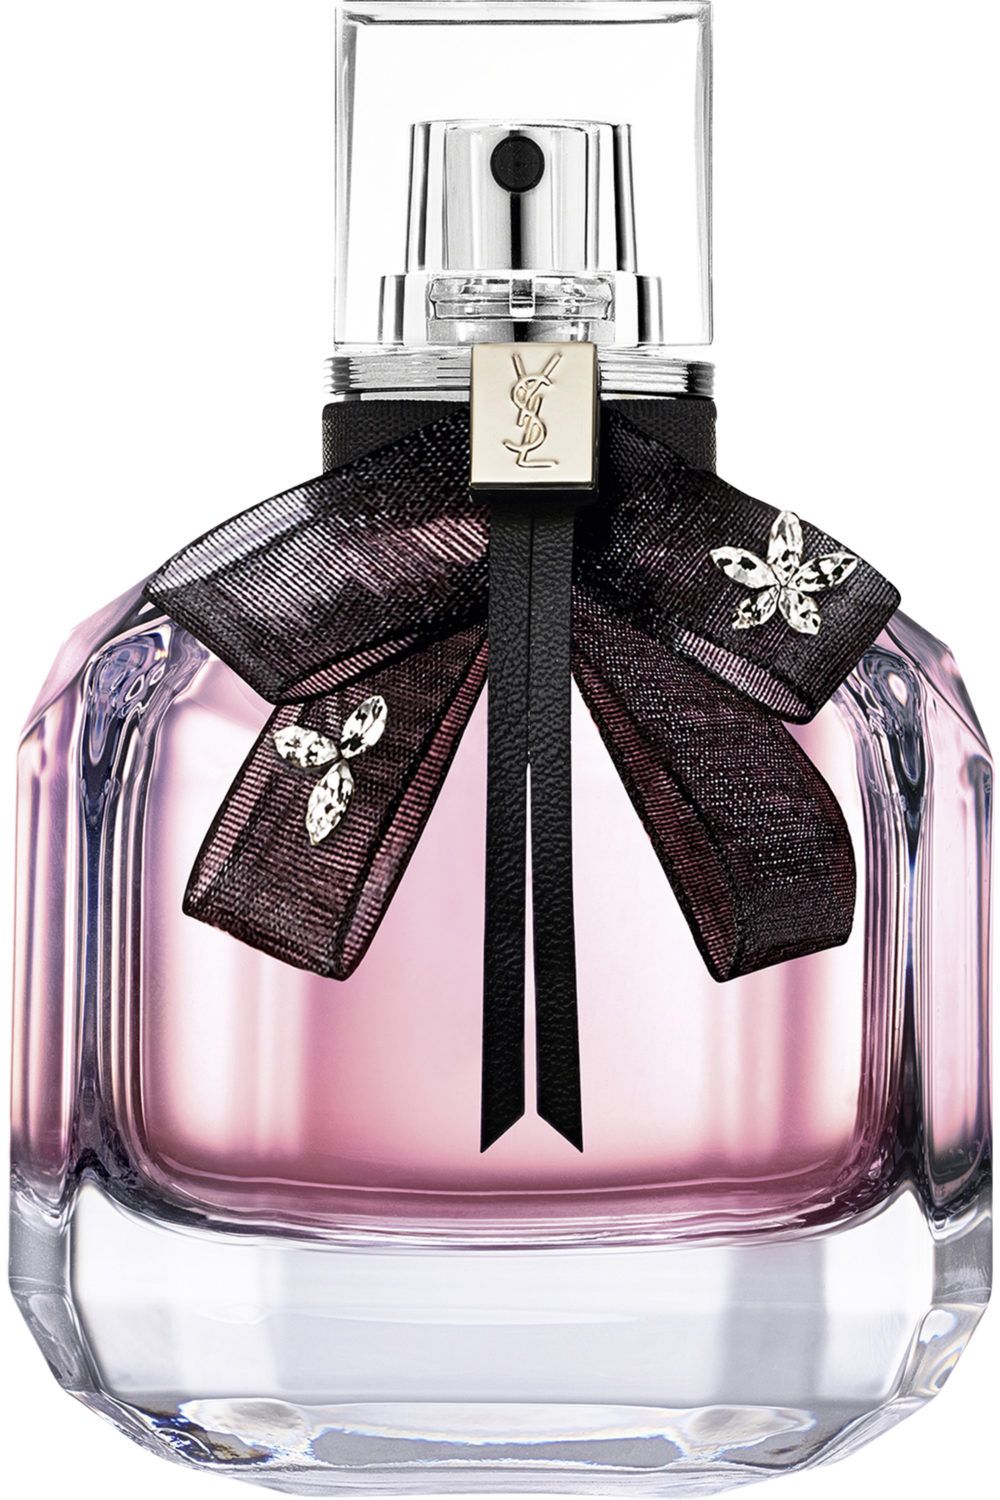 Yves Saint Laurent - Mon Paris Floral Eau de Parfum 50ml